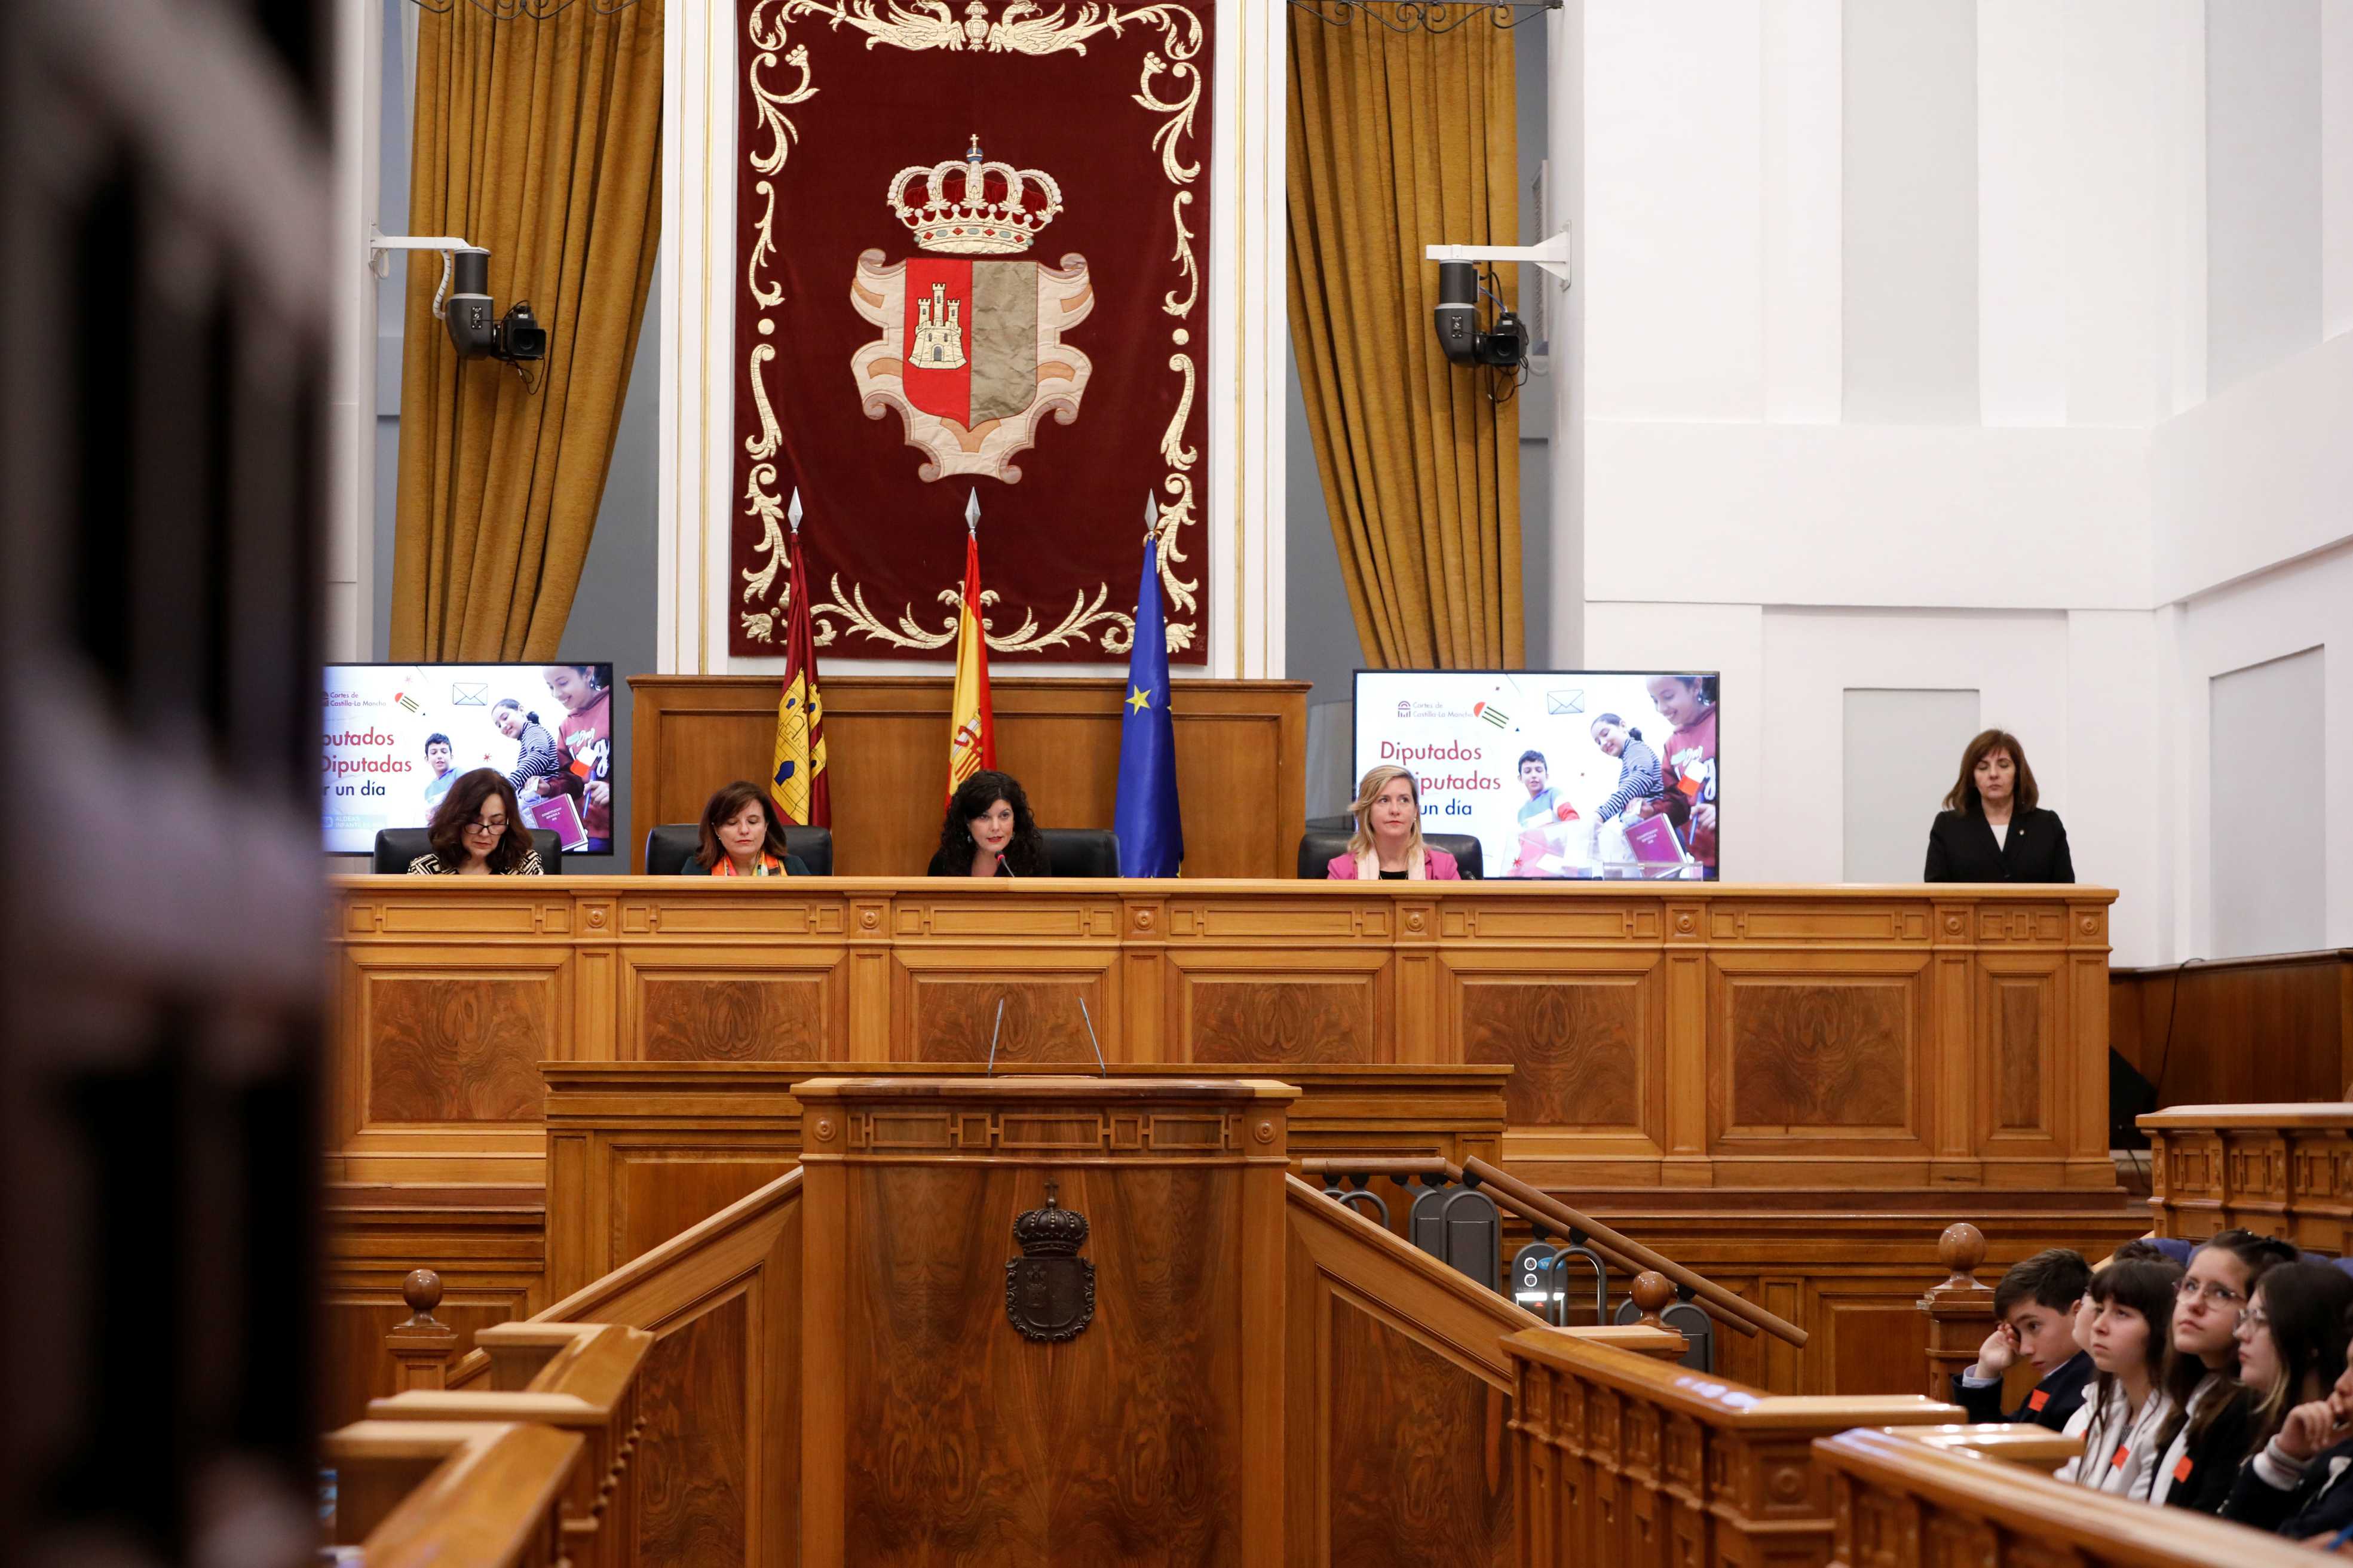 La vicepresidenta de Las Cortes de Castilla-La Mancha reivindica que se mantenga el consenso en torno a los temas de Infancia en la Cámara regional 